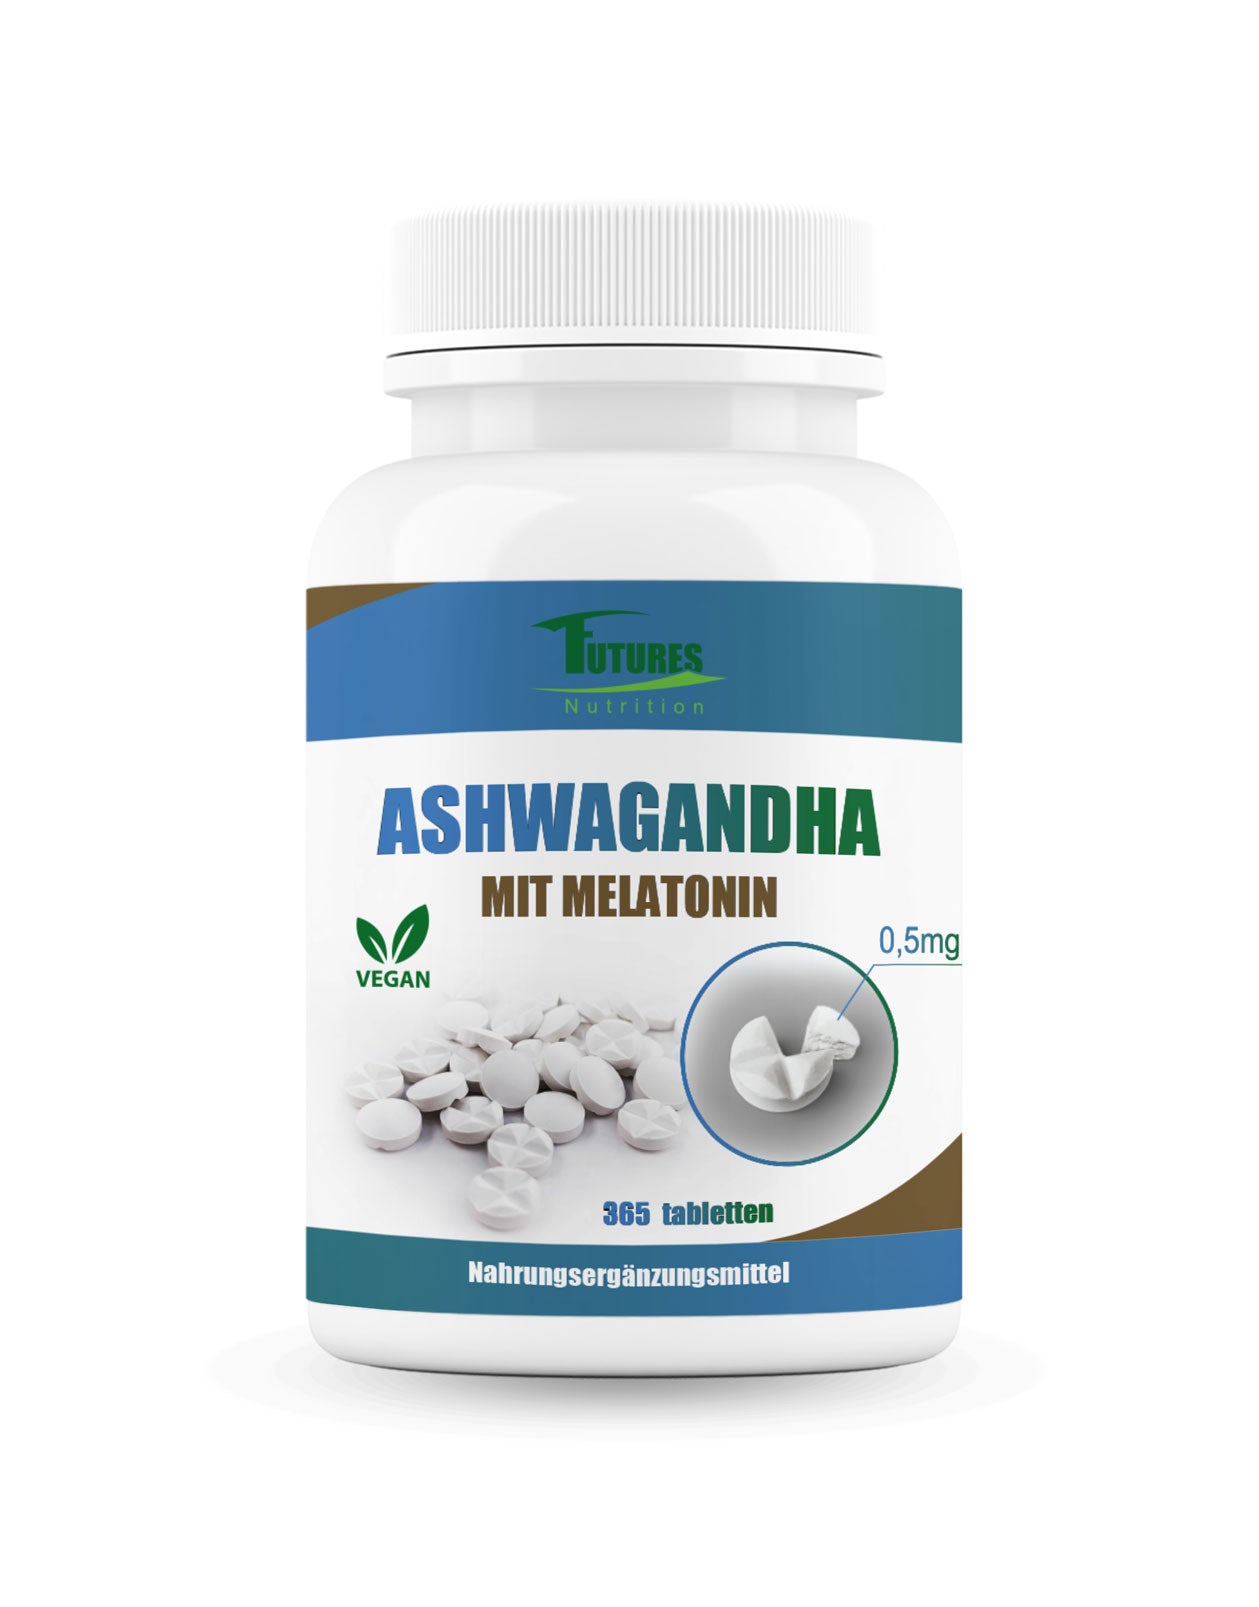 Ashwagandha med melatonin 365 tabletter - den bedste kombination til hurtig afslapning